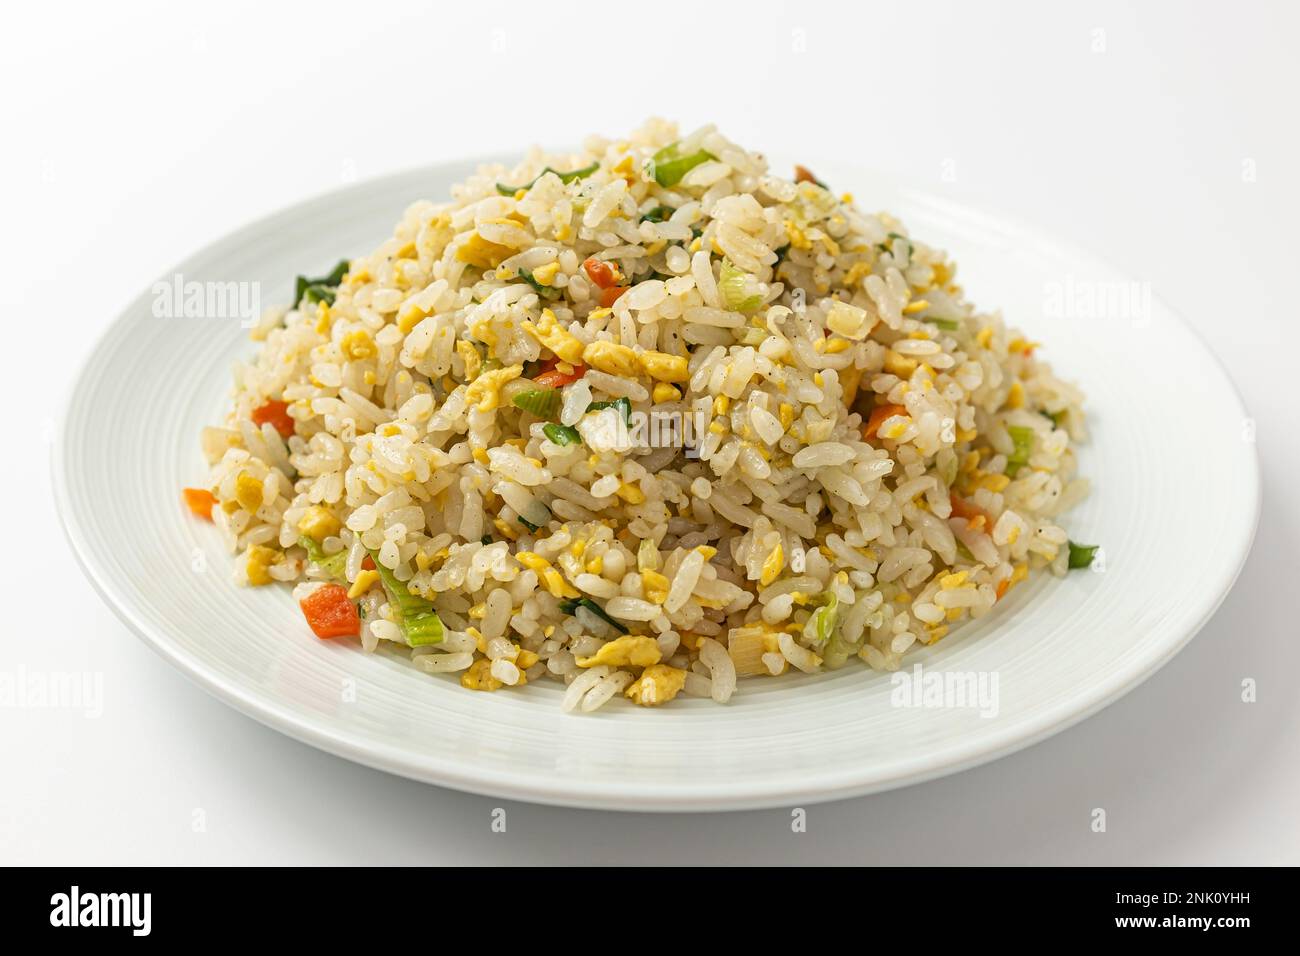 cultura alimentare cinese. piatti con uova. Riso e verdure fritte in padella Foto Stock